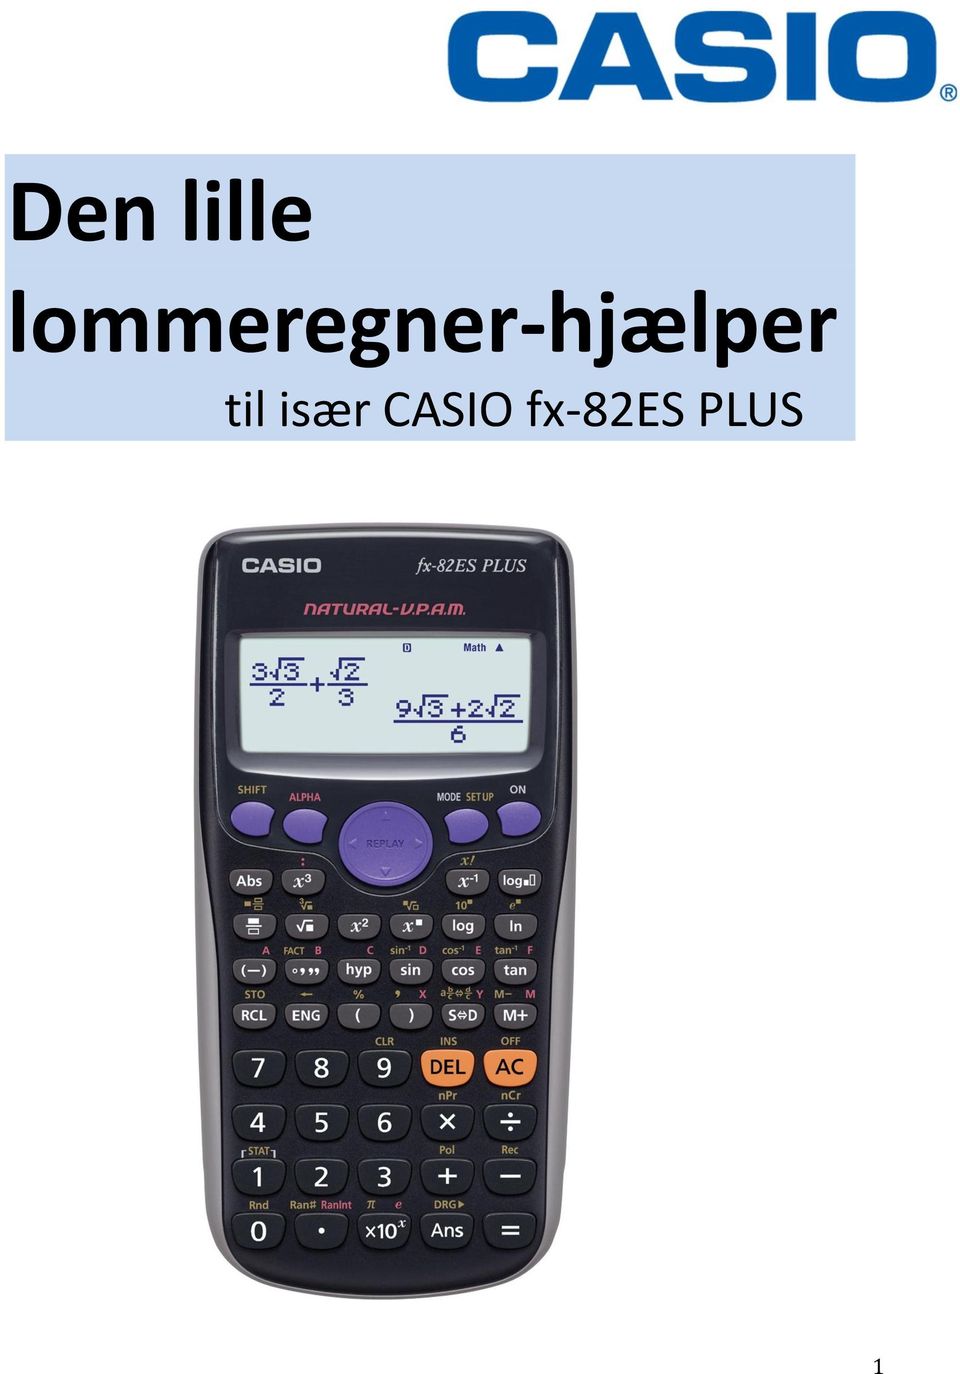 Den lille lommeregner-hjælper til især CASIO fx-82es PLUS - PDF Free  Download